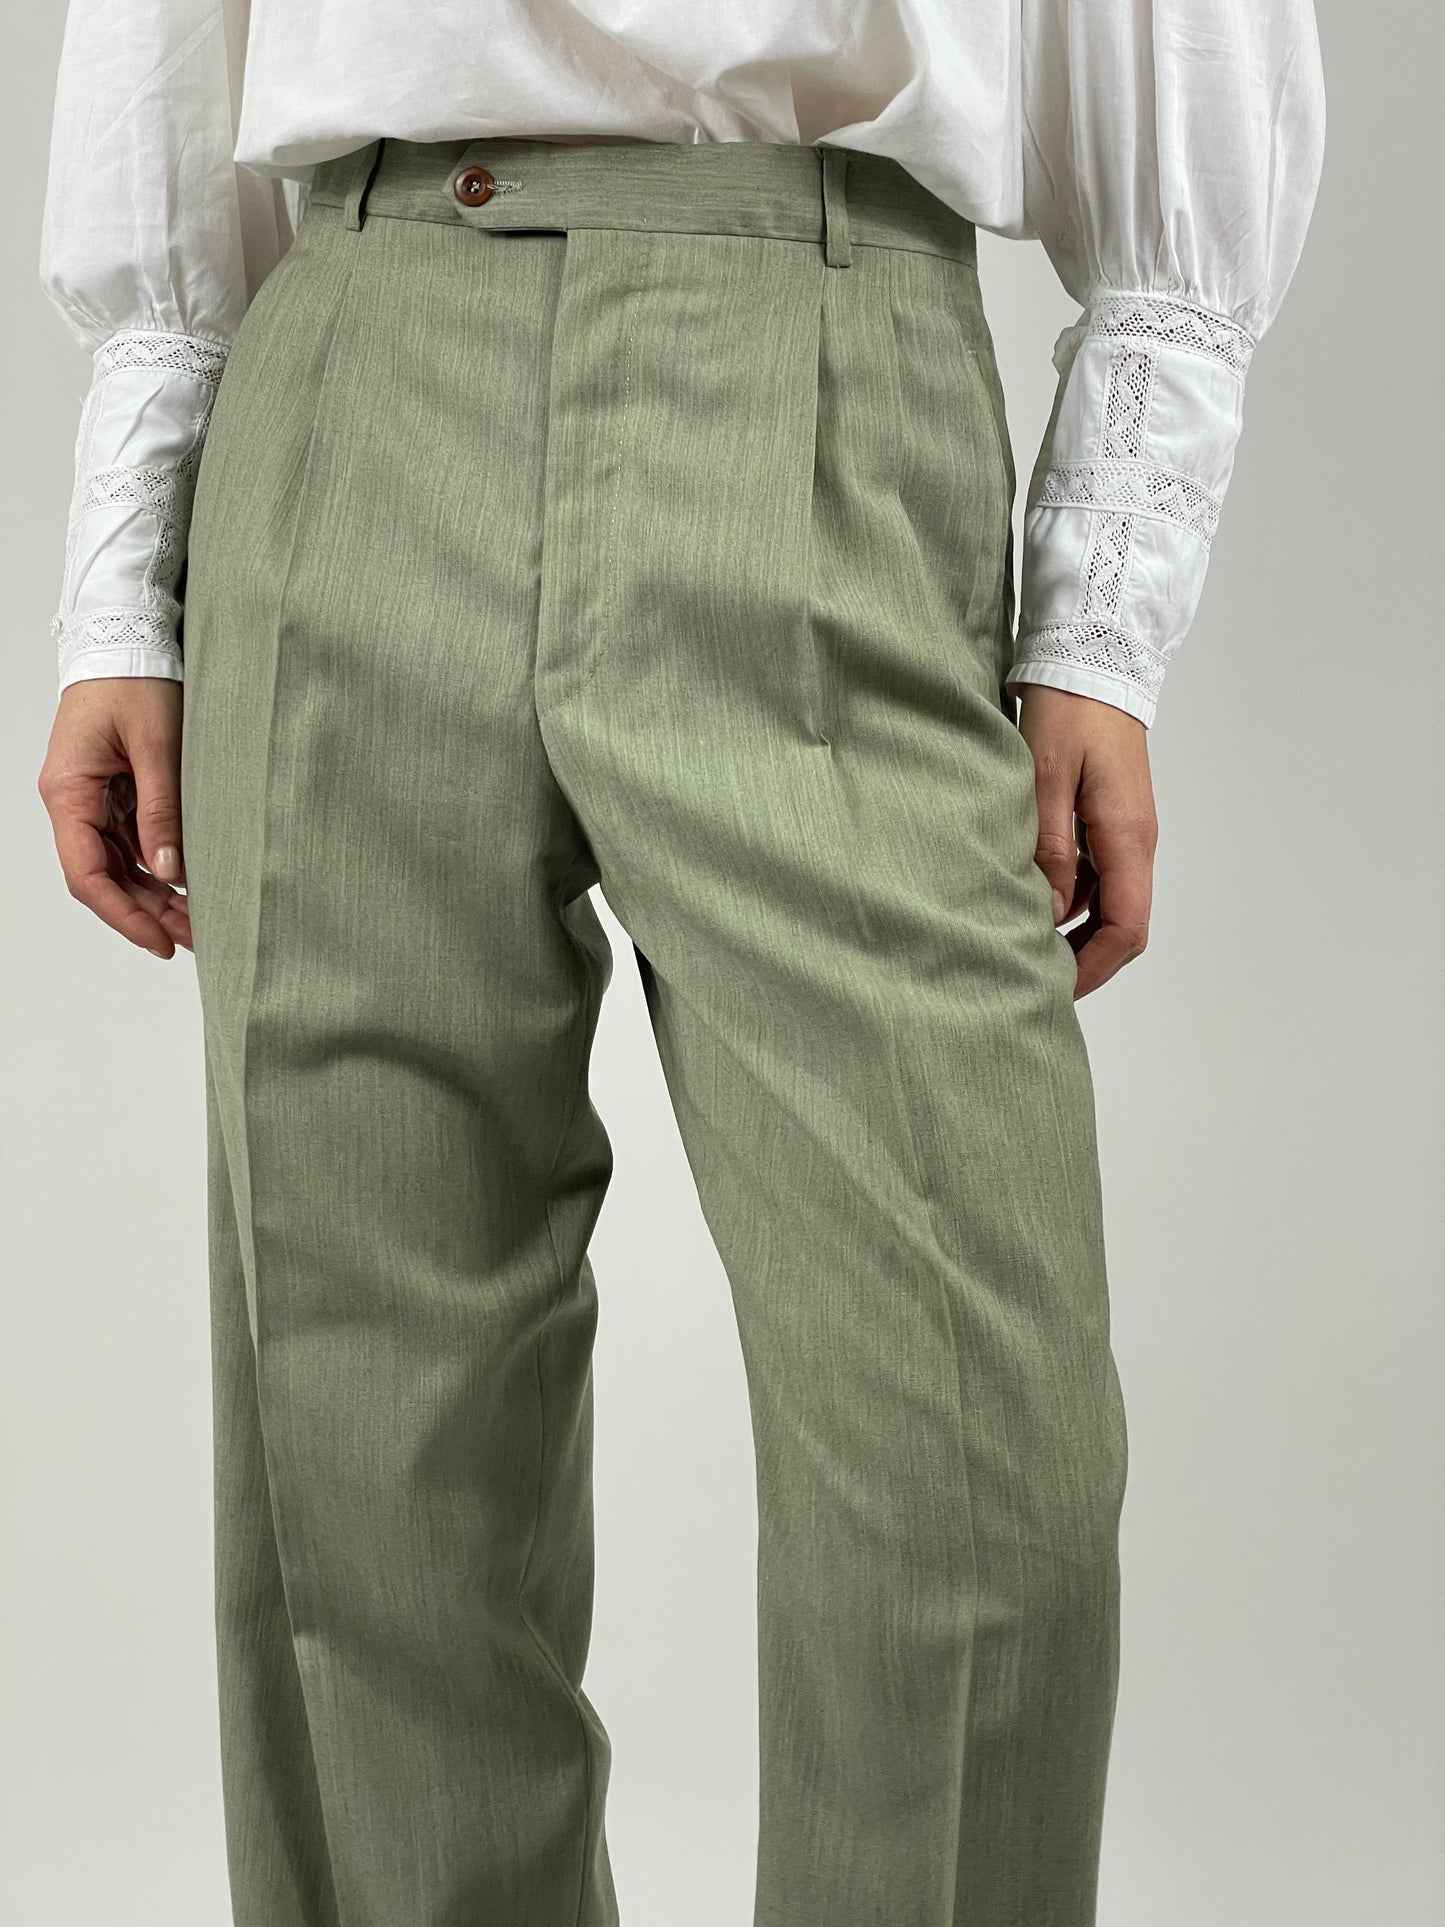 Pantalone sartoriale in lana